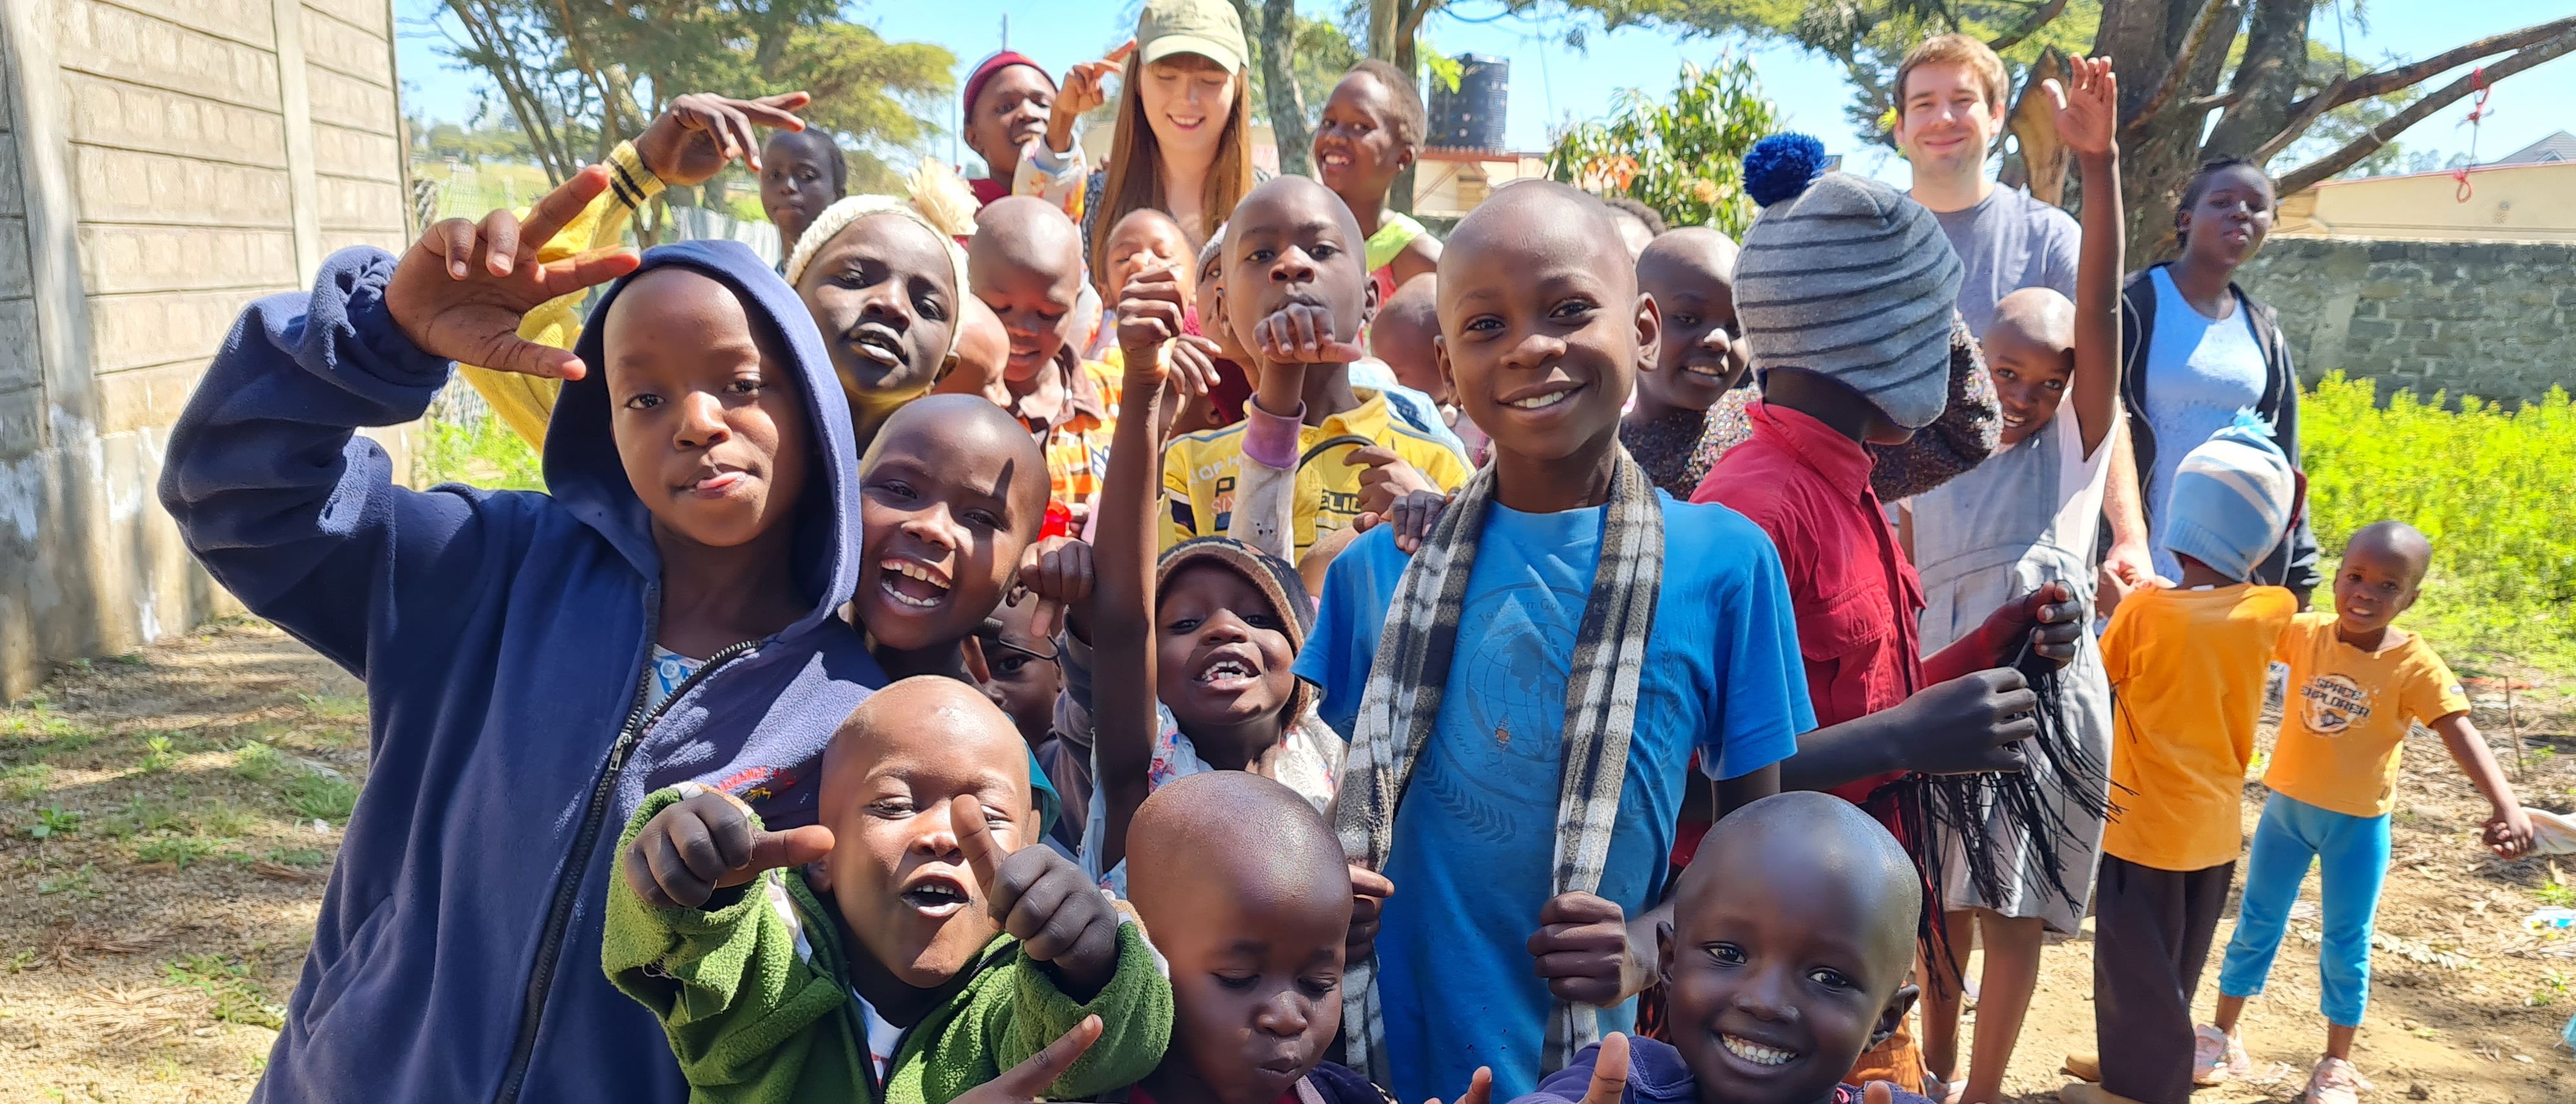 Die Kinder des Waisenhauses in Kenia freuen sich